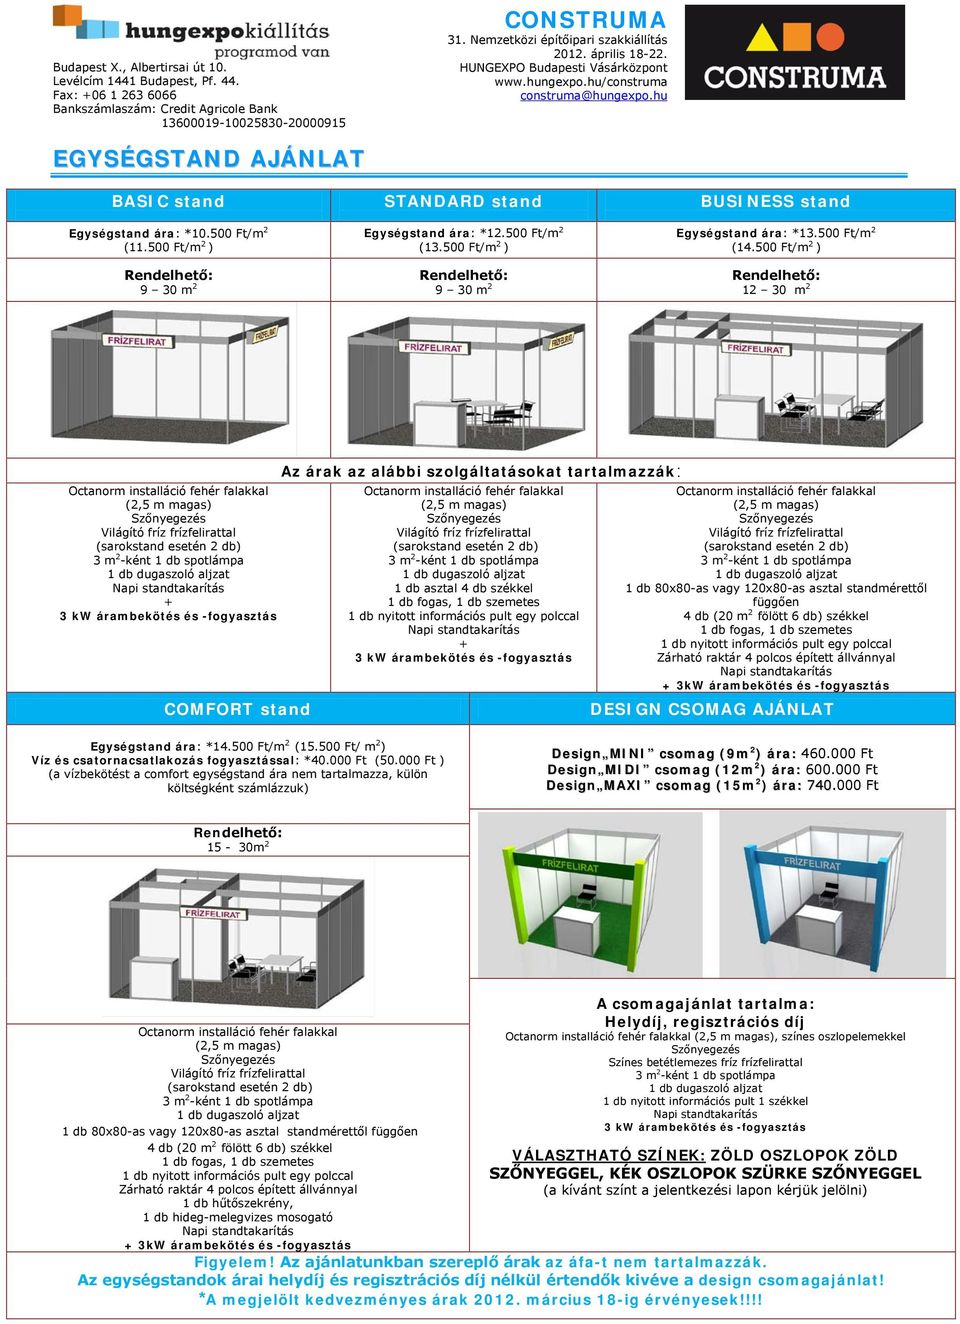 és -fogyasztás COMFORT stand Az árak az alábbi szolgáltatásokat tartalmazzák: Octanorm installáció fehér falakkal (2,5 m magas) Világító fríz frízfelirattal (sarokstand esetén 2 db) 1 db asztal 4 db